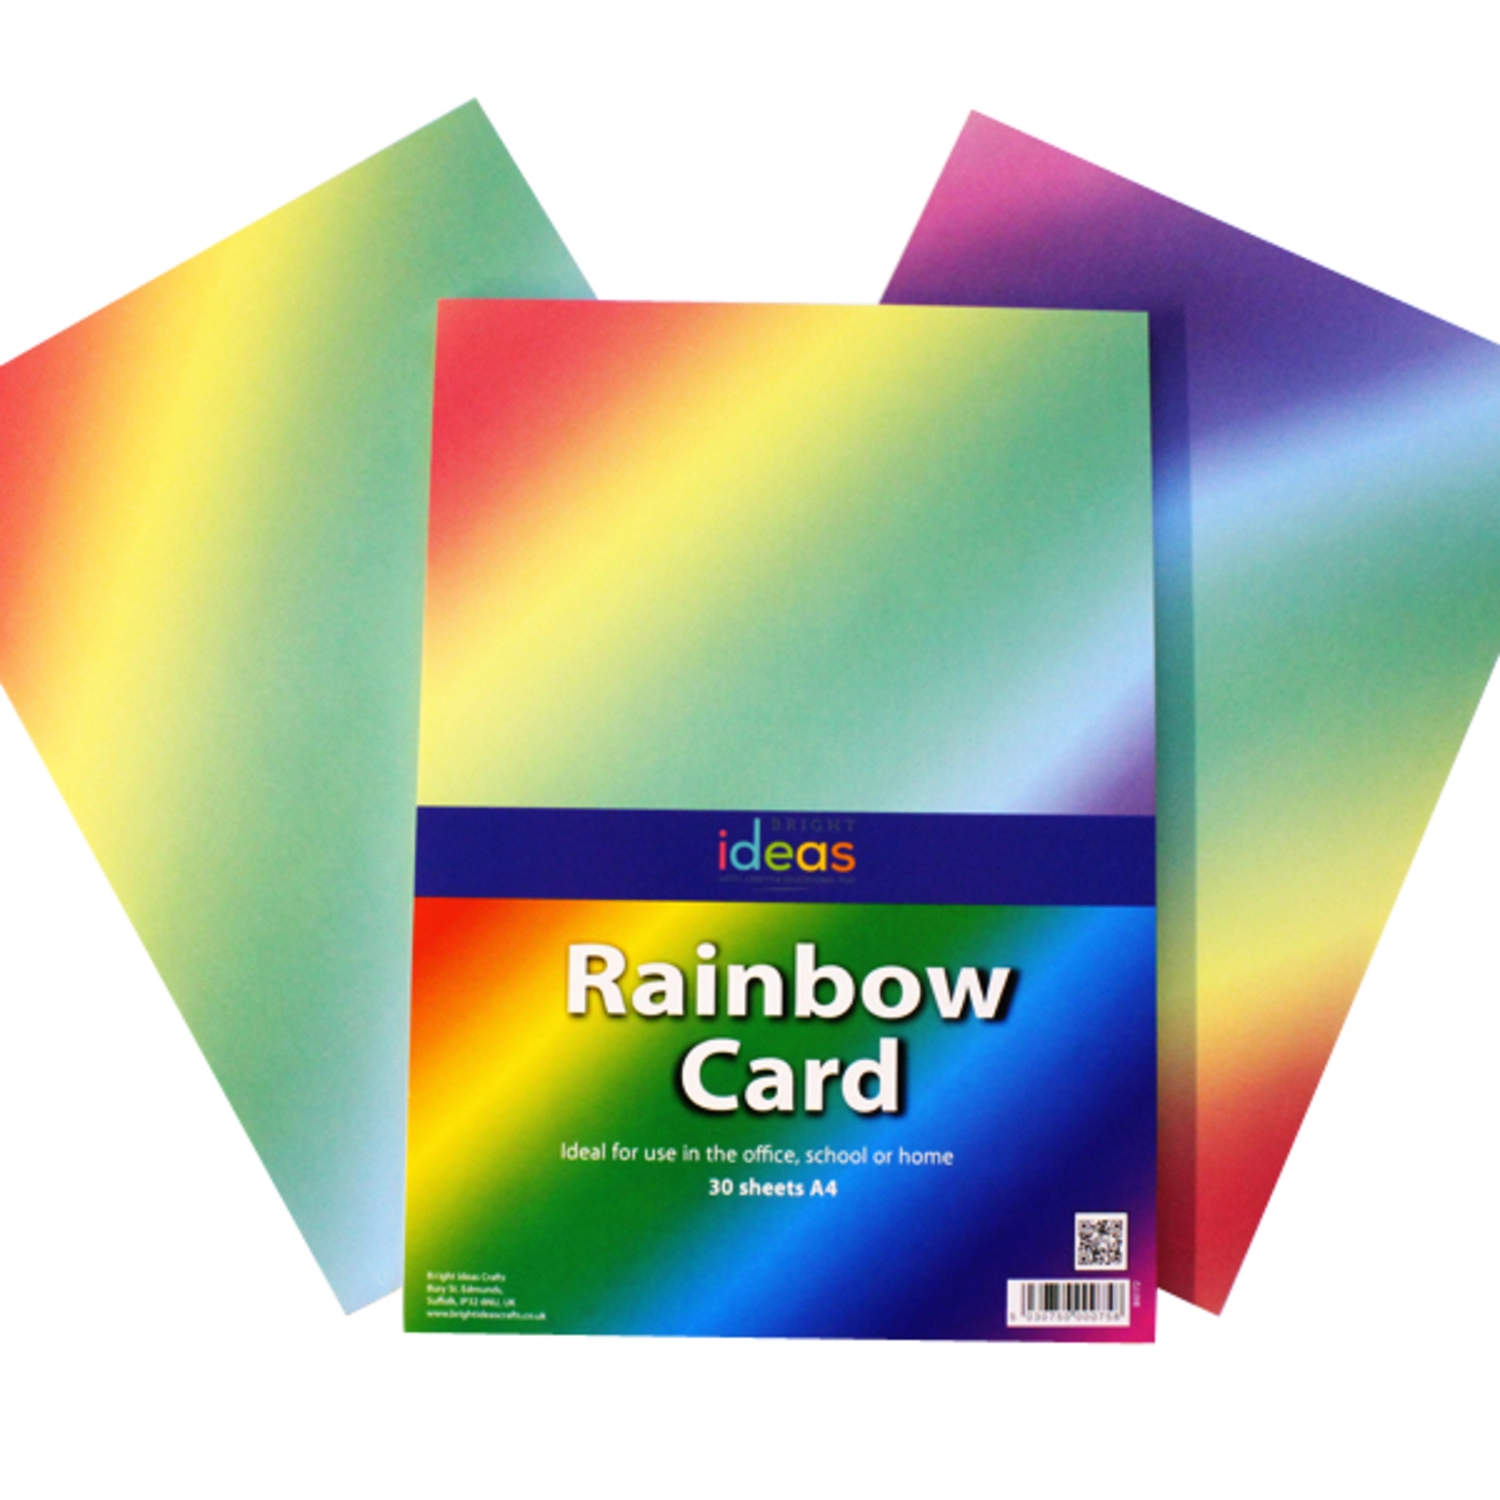 Rainbow 4 тесты. Rainbow Card. Colorful Cards handouts.